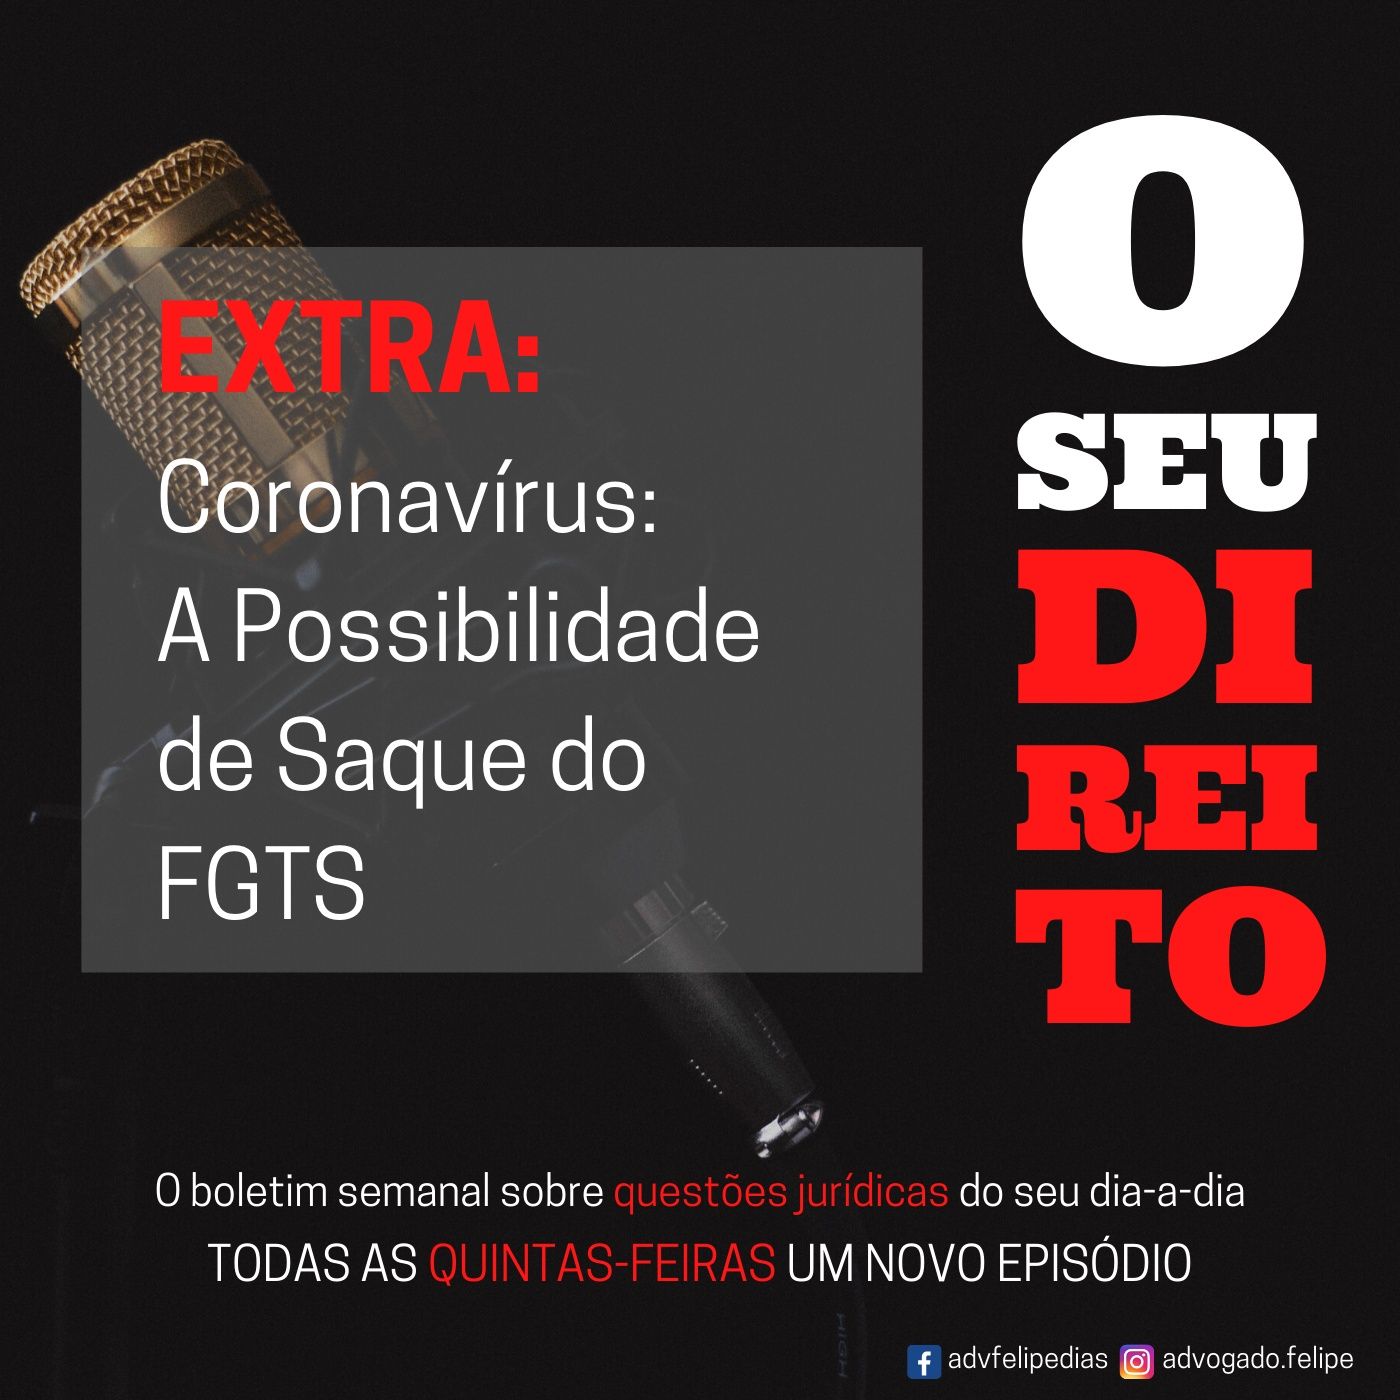 EXTRA #5 - Coronavírus: A Possibilidade de Saque do FGTS